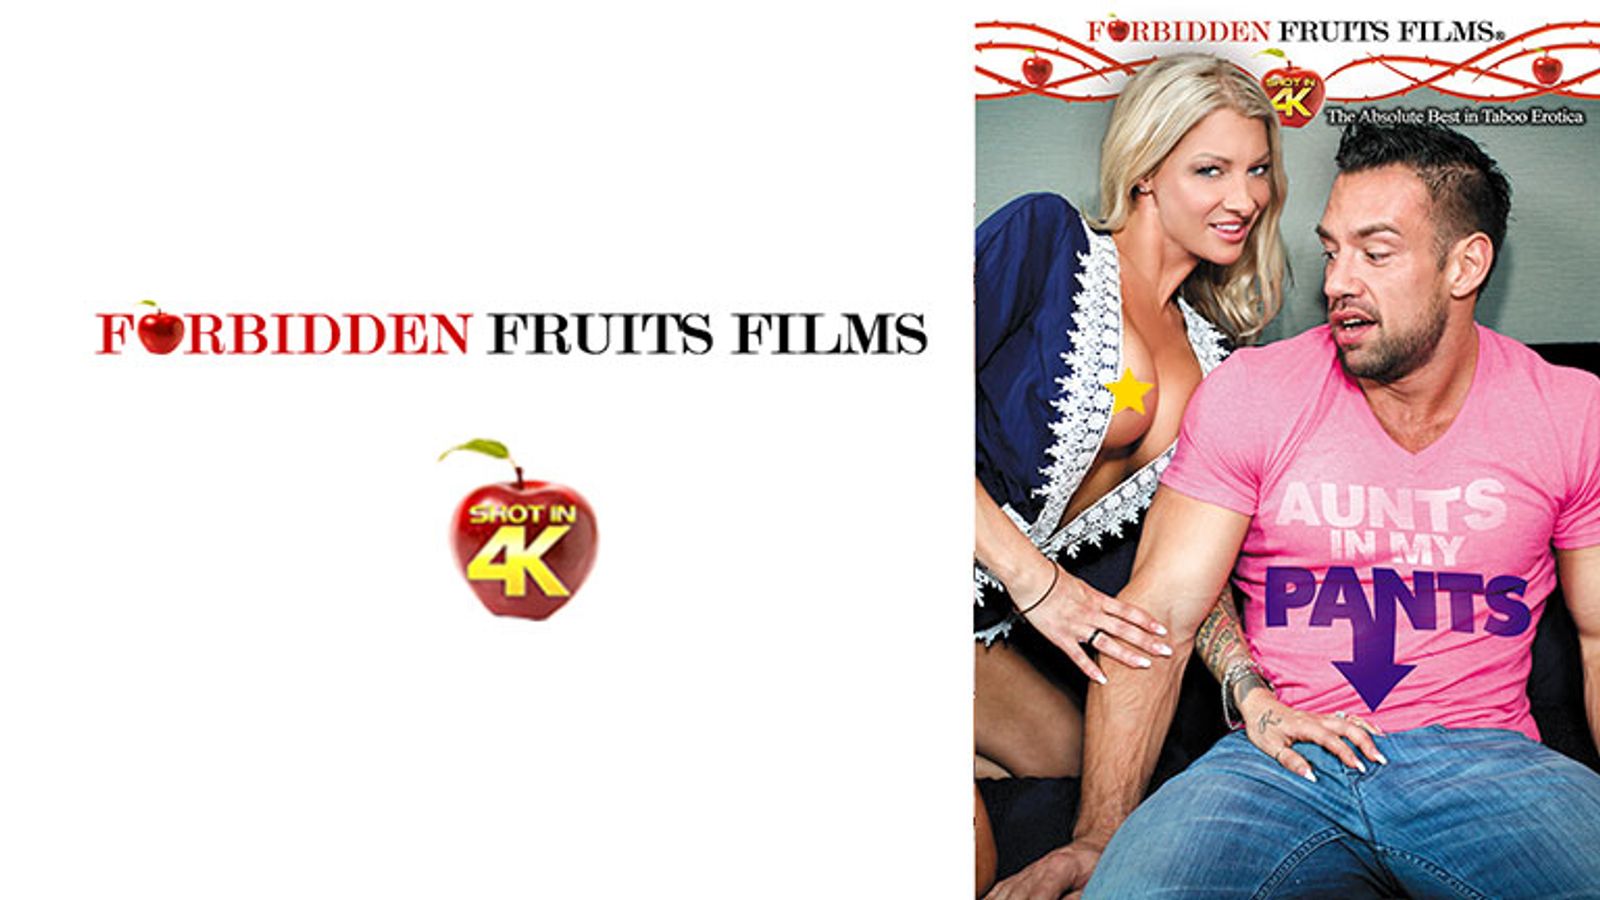 beth celeste recommends Forbidden Fruits Films